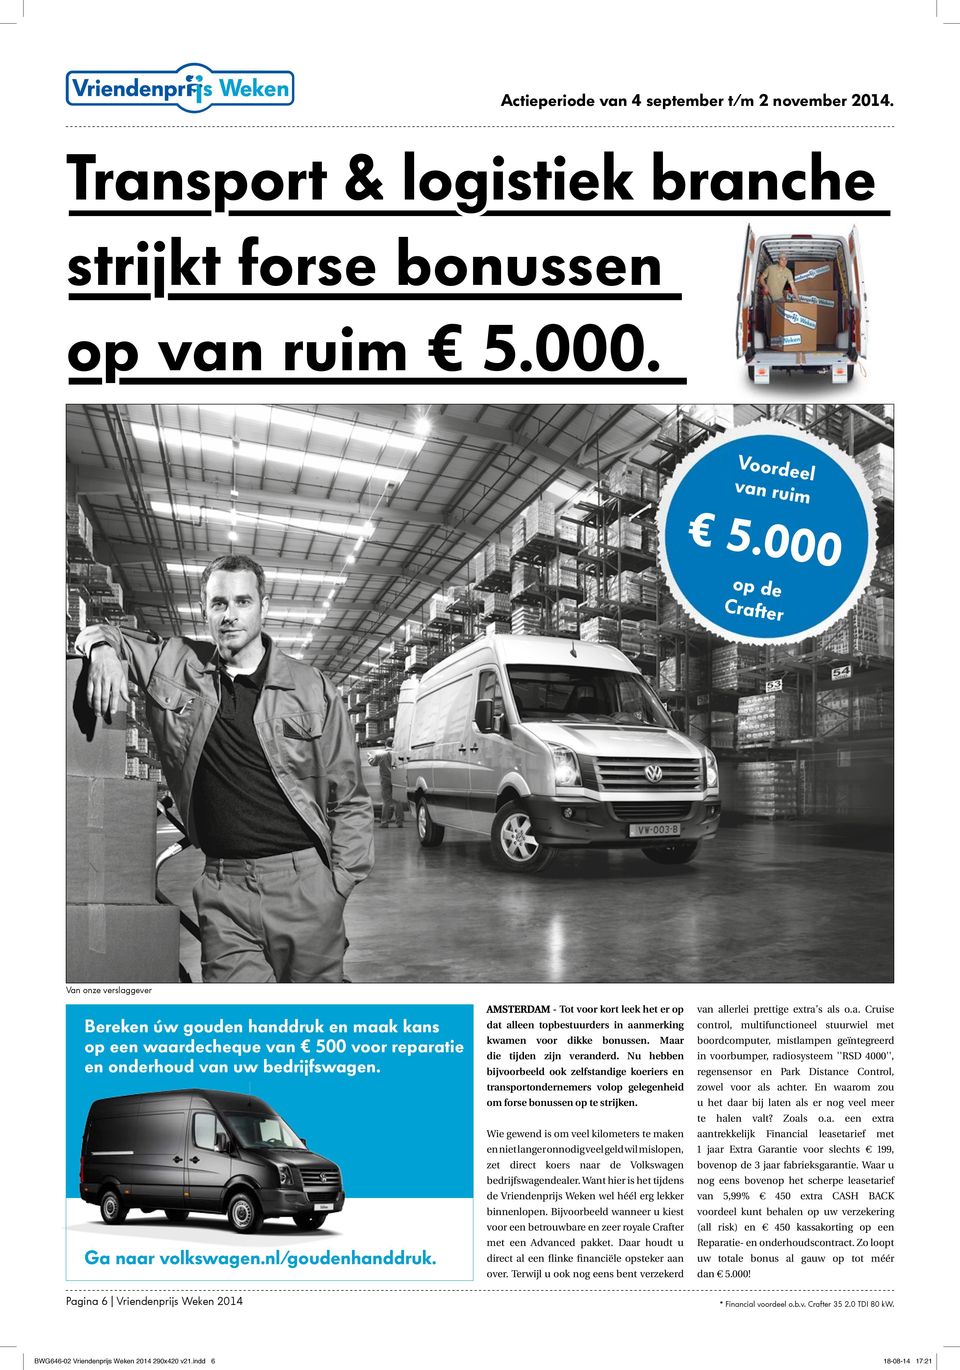 Pagina 6 Vriendenprijs Weken 2014 AMSTERDAM - Tot kort leek het er op dat alleen topbestuurders in aanmerking kwamen dikke bonussen. Maar die tijden zijn veranderd.